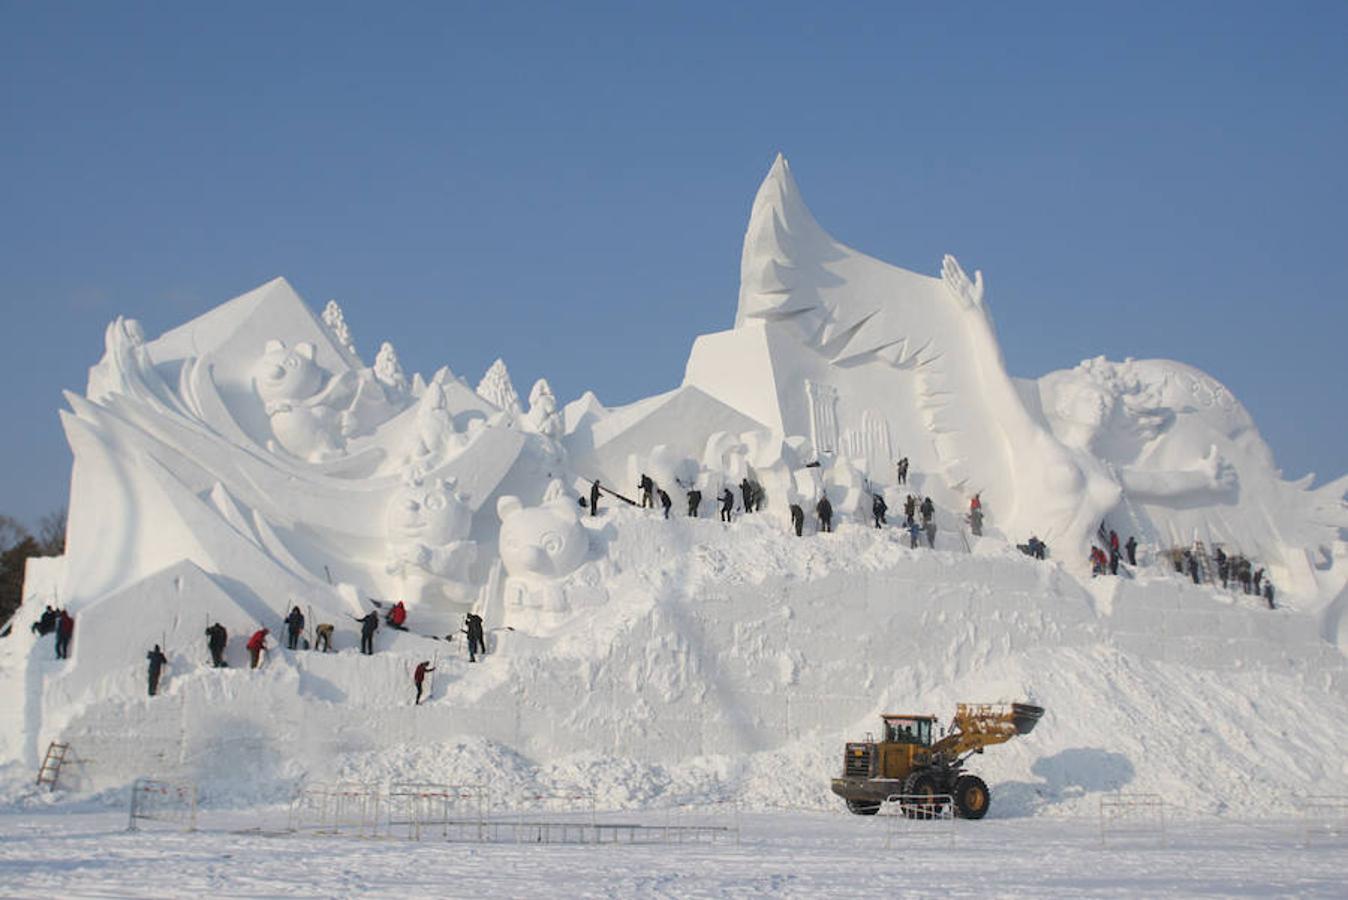 La localidad china de Harbin se prepara para su tradicional Festival de esculturas de hielo y nieve.